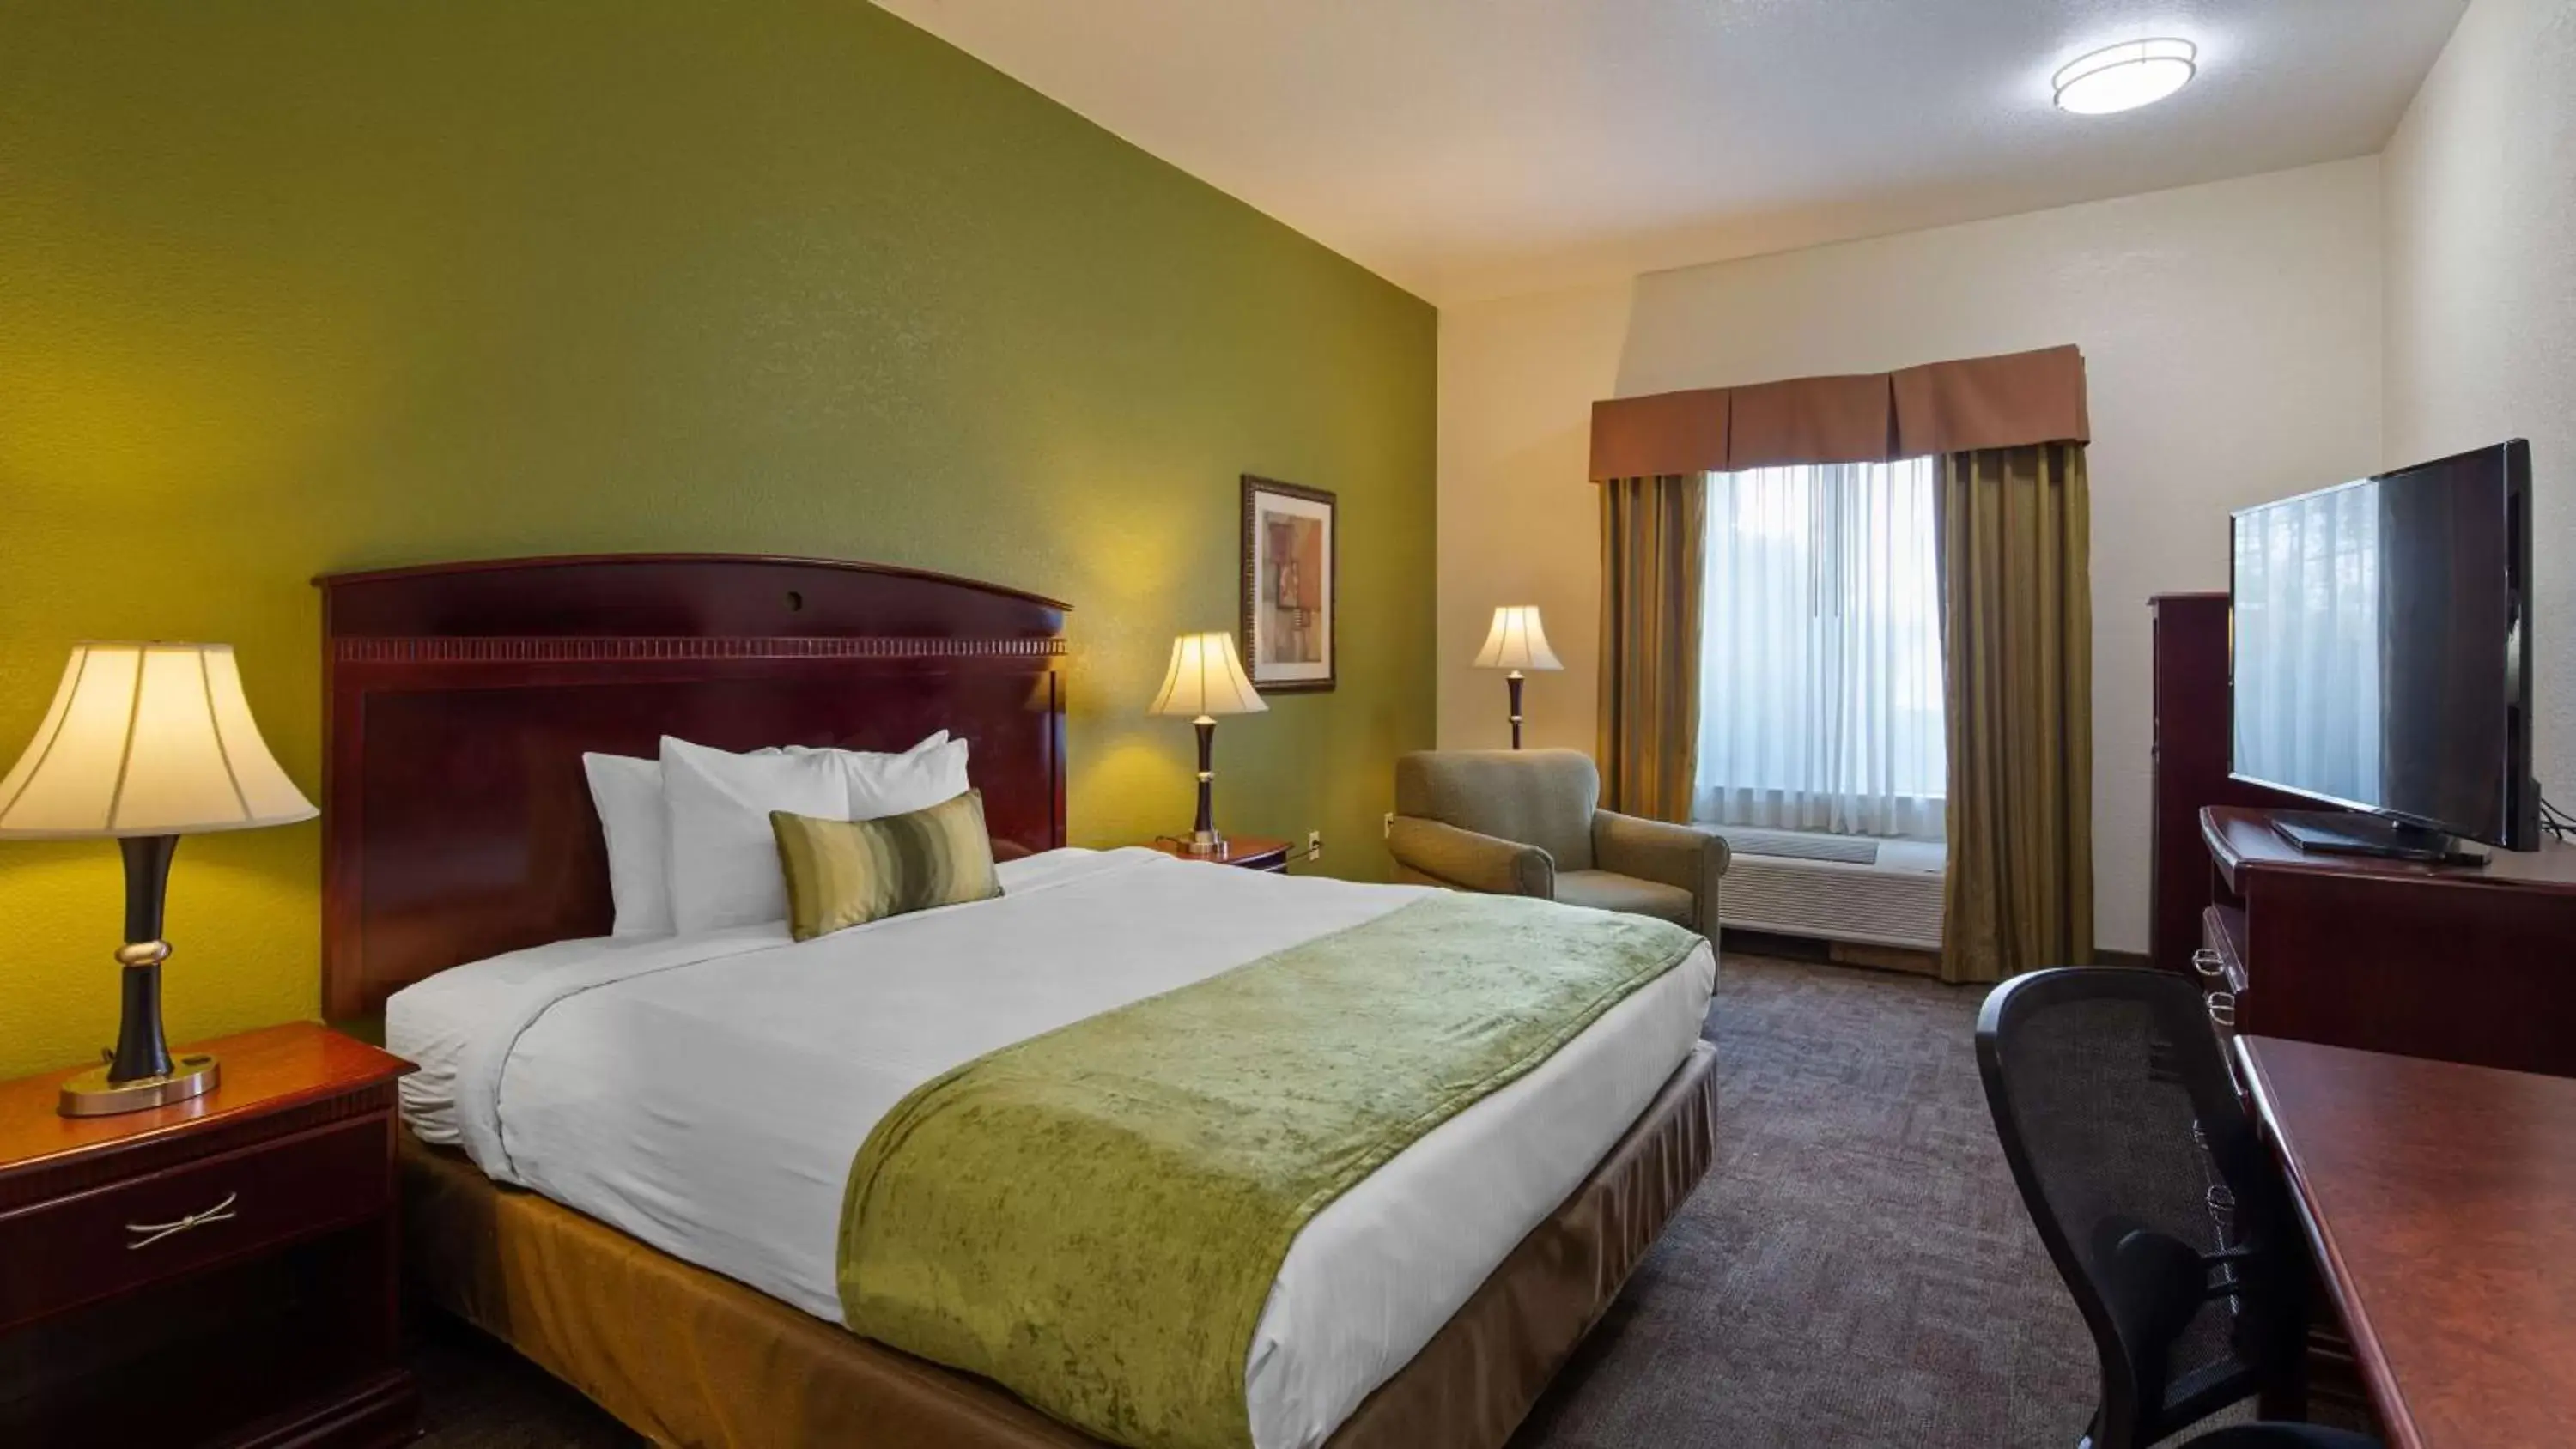 Bedroom, Bed in Best Western Palace Inn & Suites